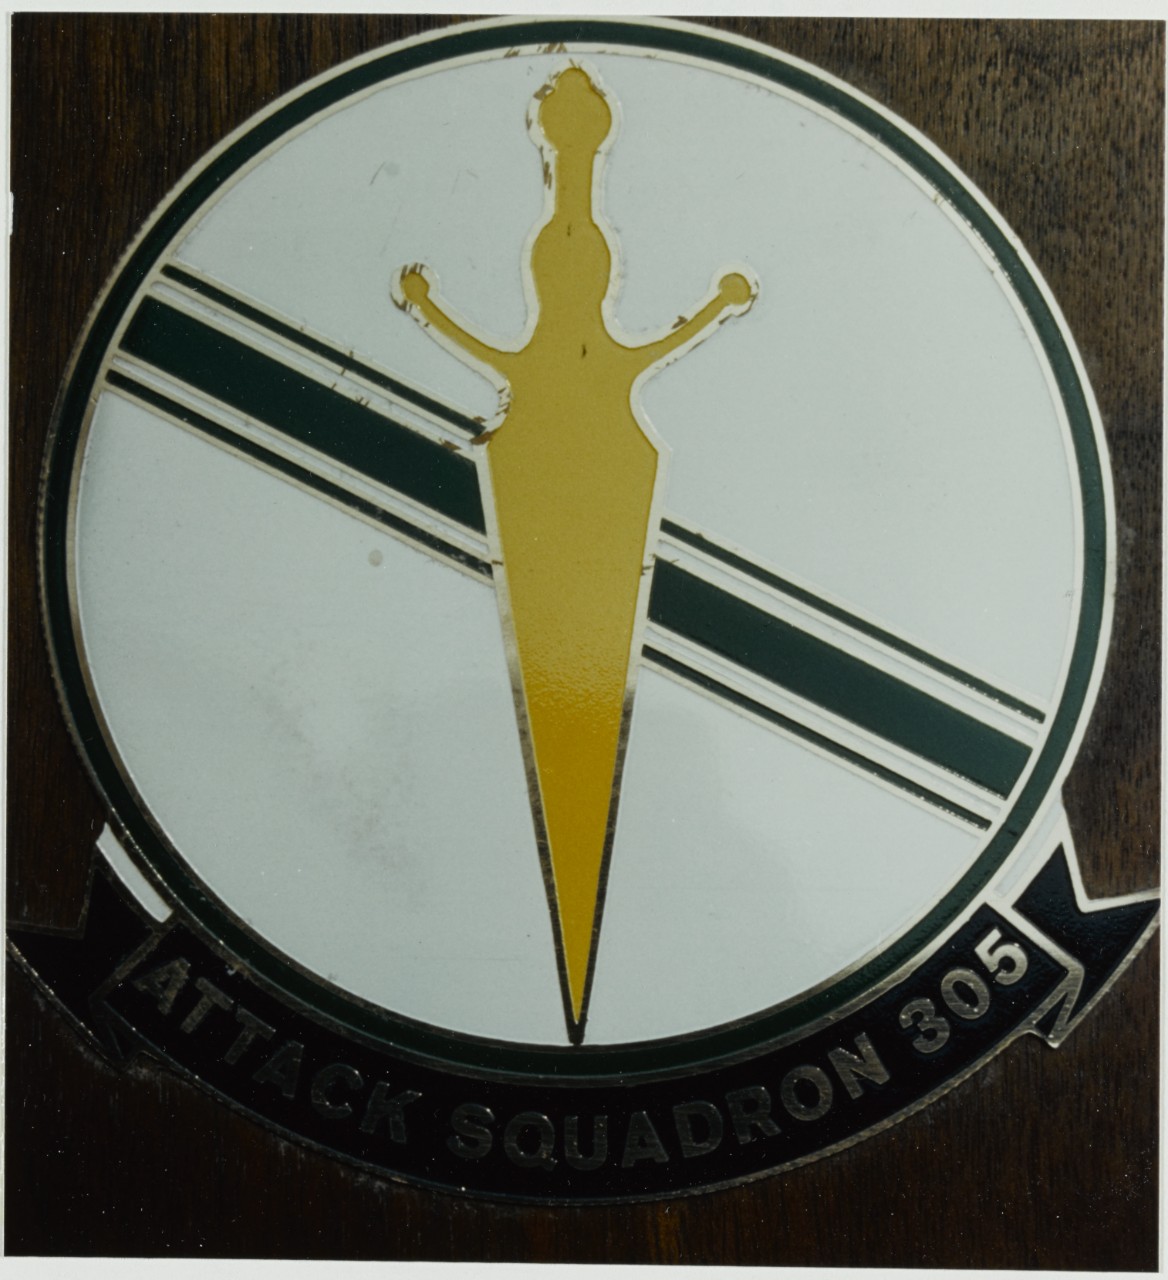 Insignia: Attack Squadron 305